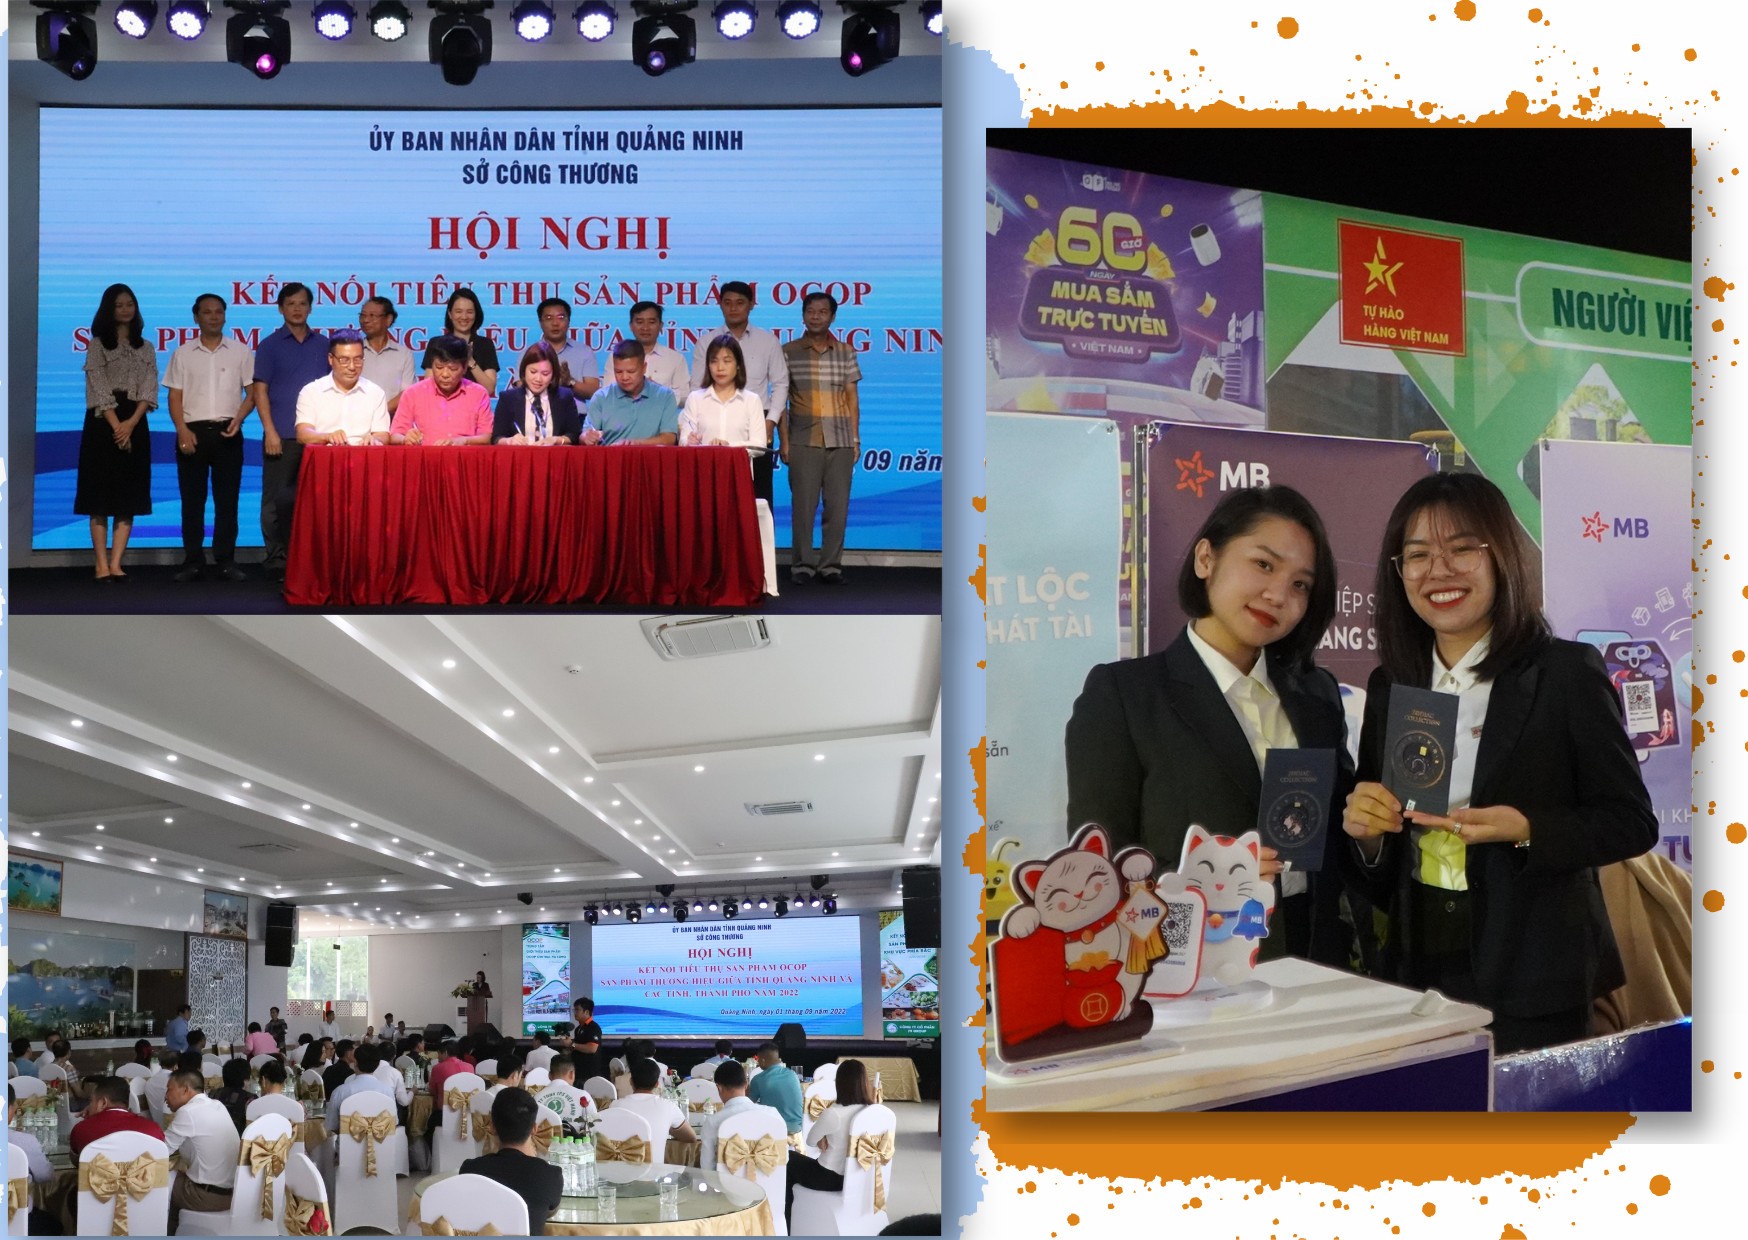 Longform | Quảng Ninh: Phát triển thị trường bền vững cho sản phẩm OCOP